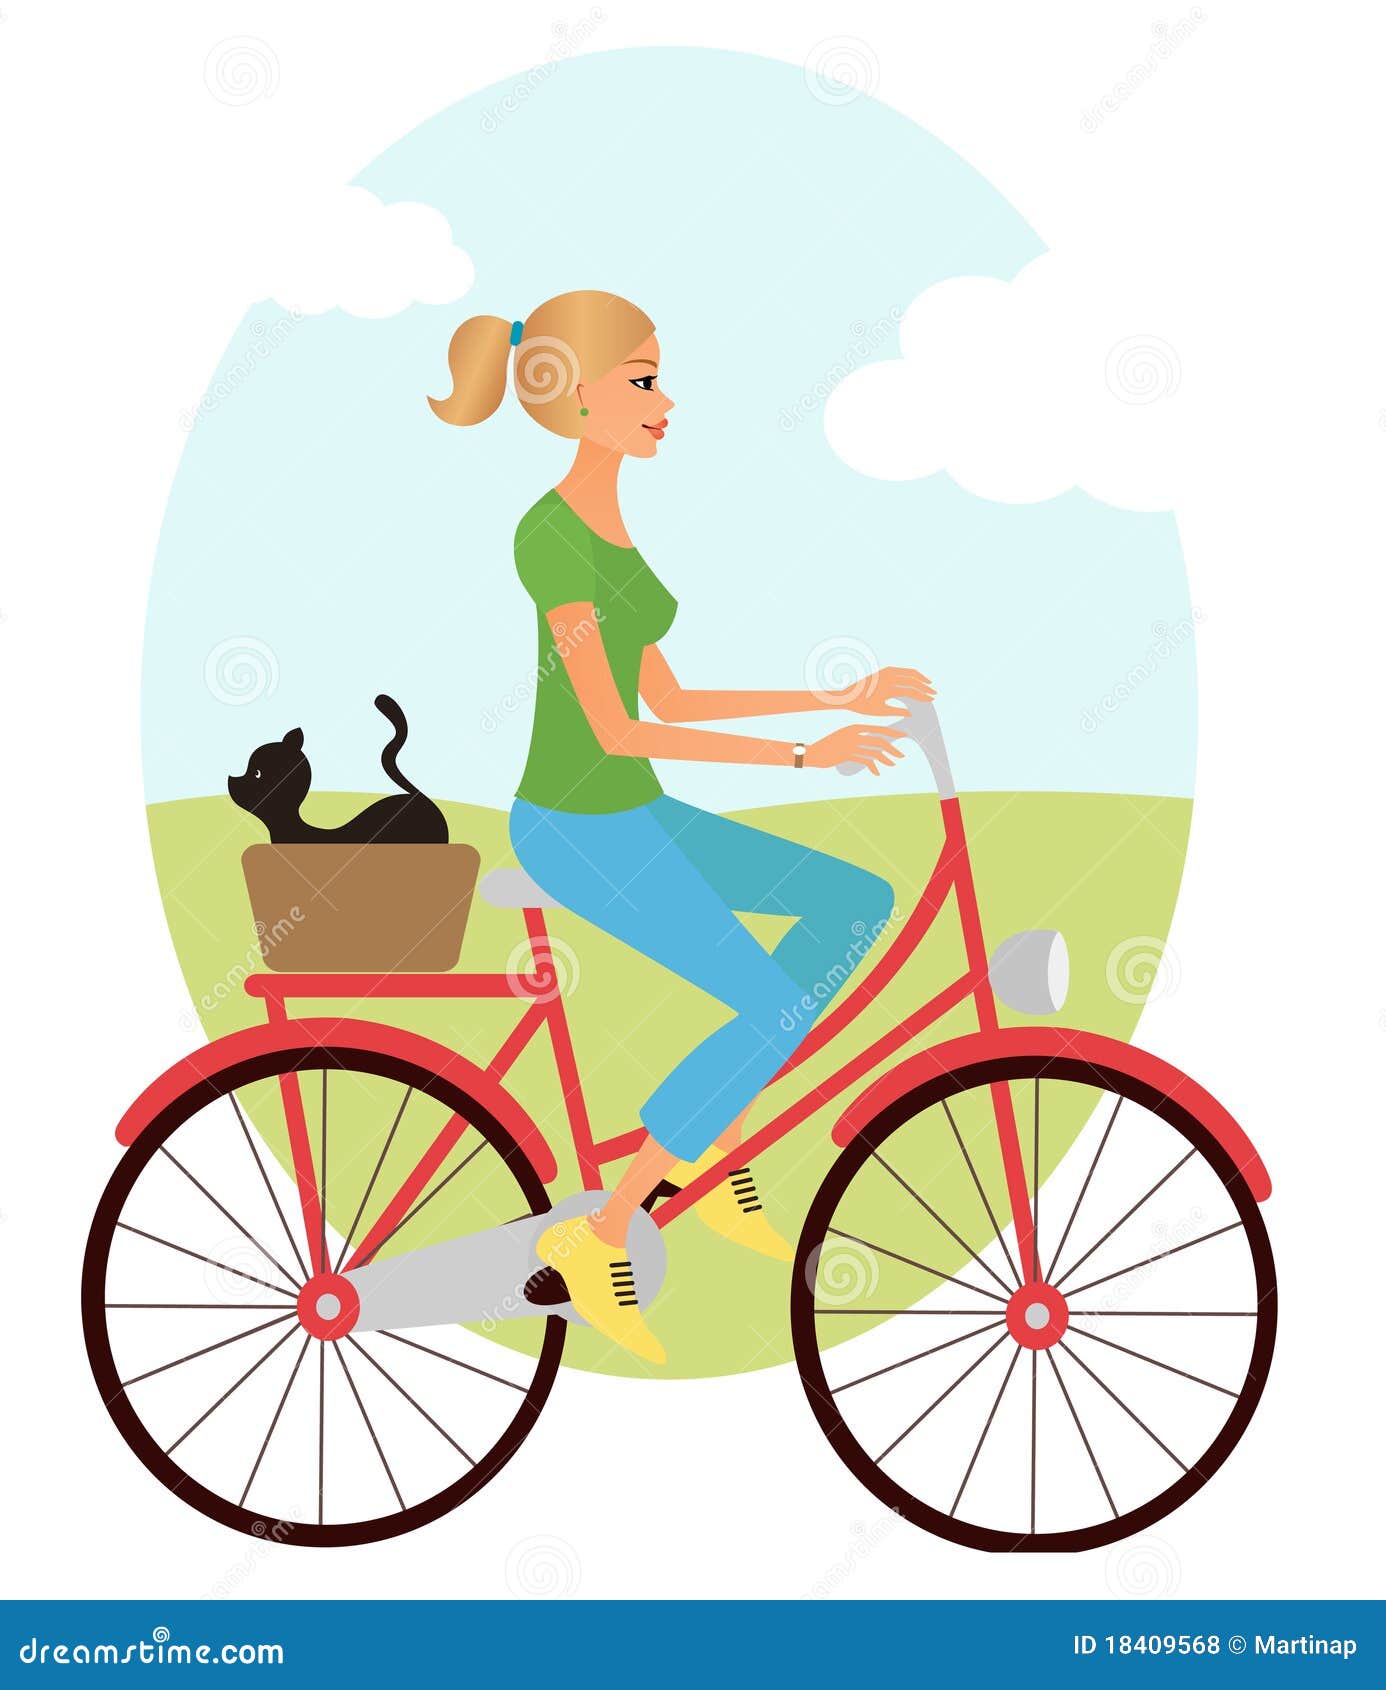 girl on a bike clipart - photo #41